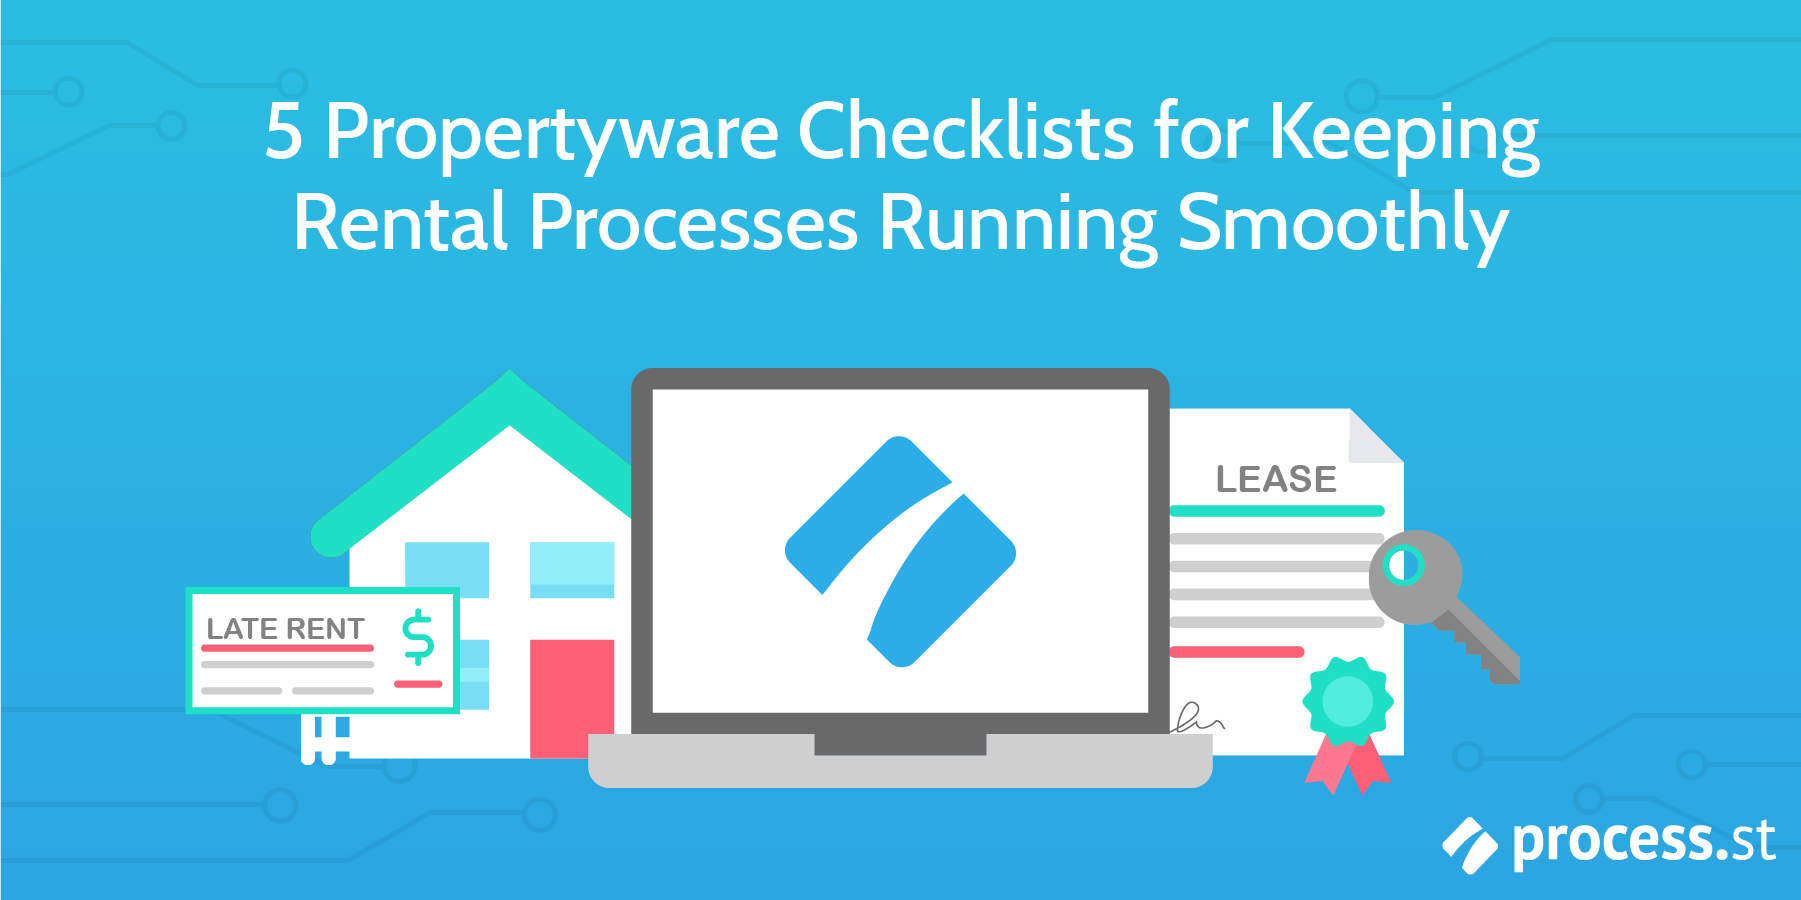 propertyware-checklists